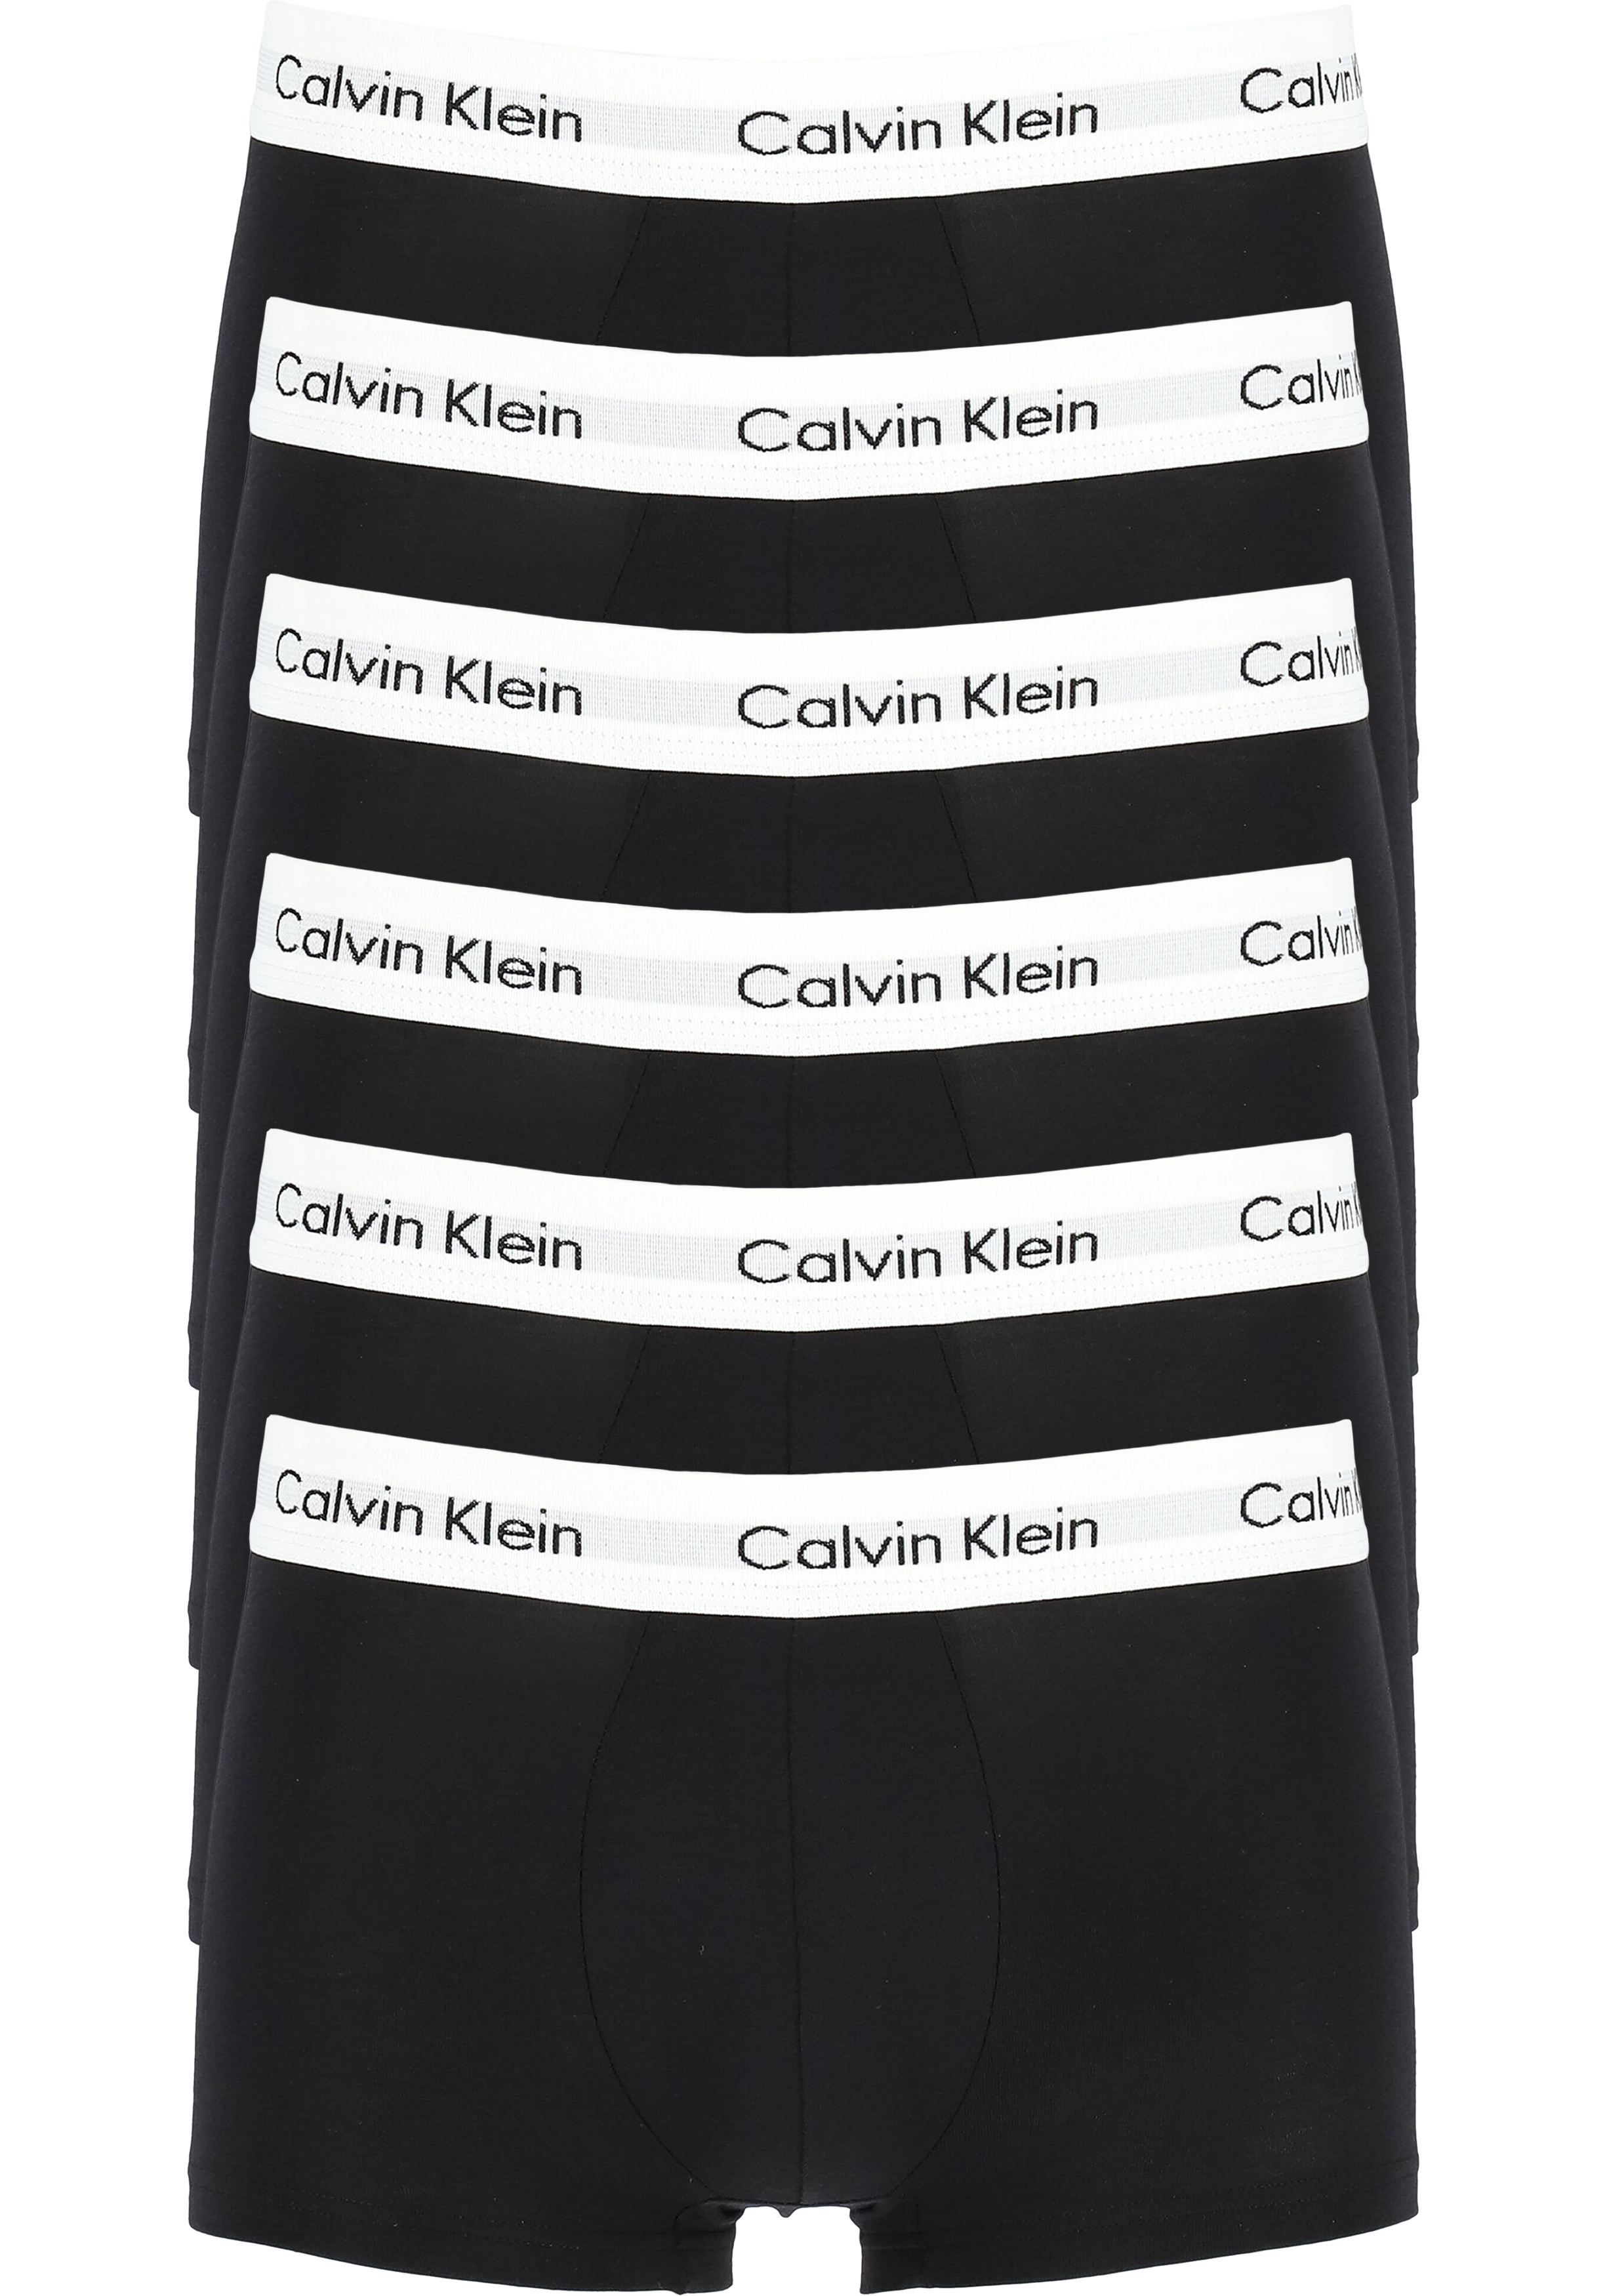 duidelijkheid Verwachten Rood Actie 6-pack: Calvin Klein low rise trunks, lage heren boxers kort, zwart -  Zomer SALE tot 70% korting